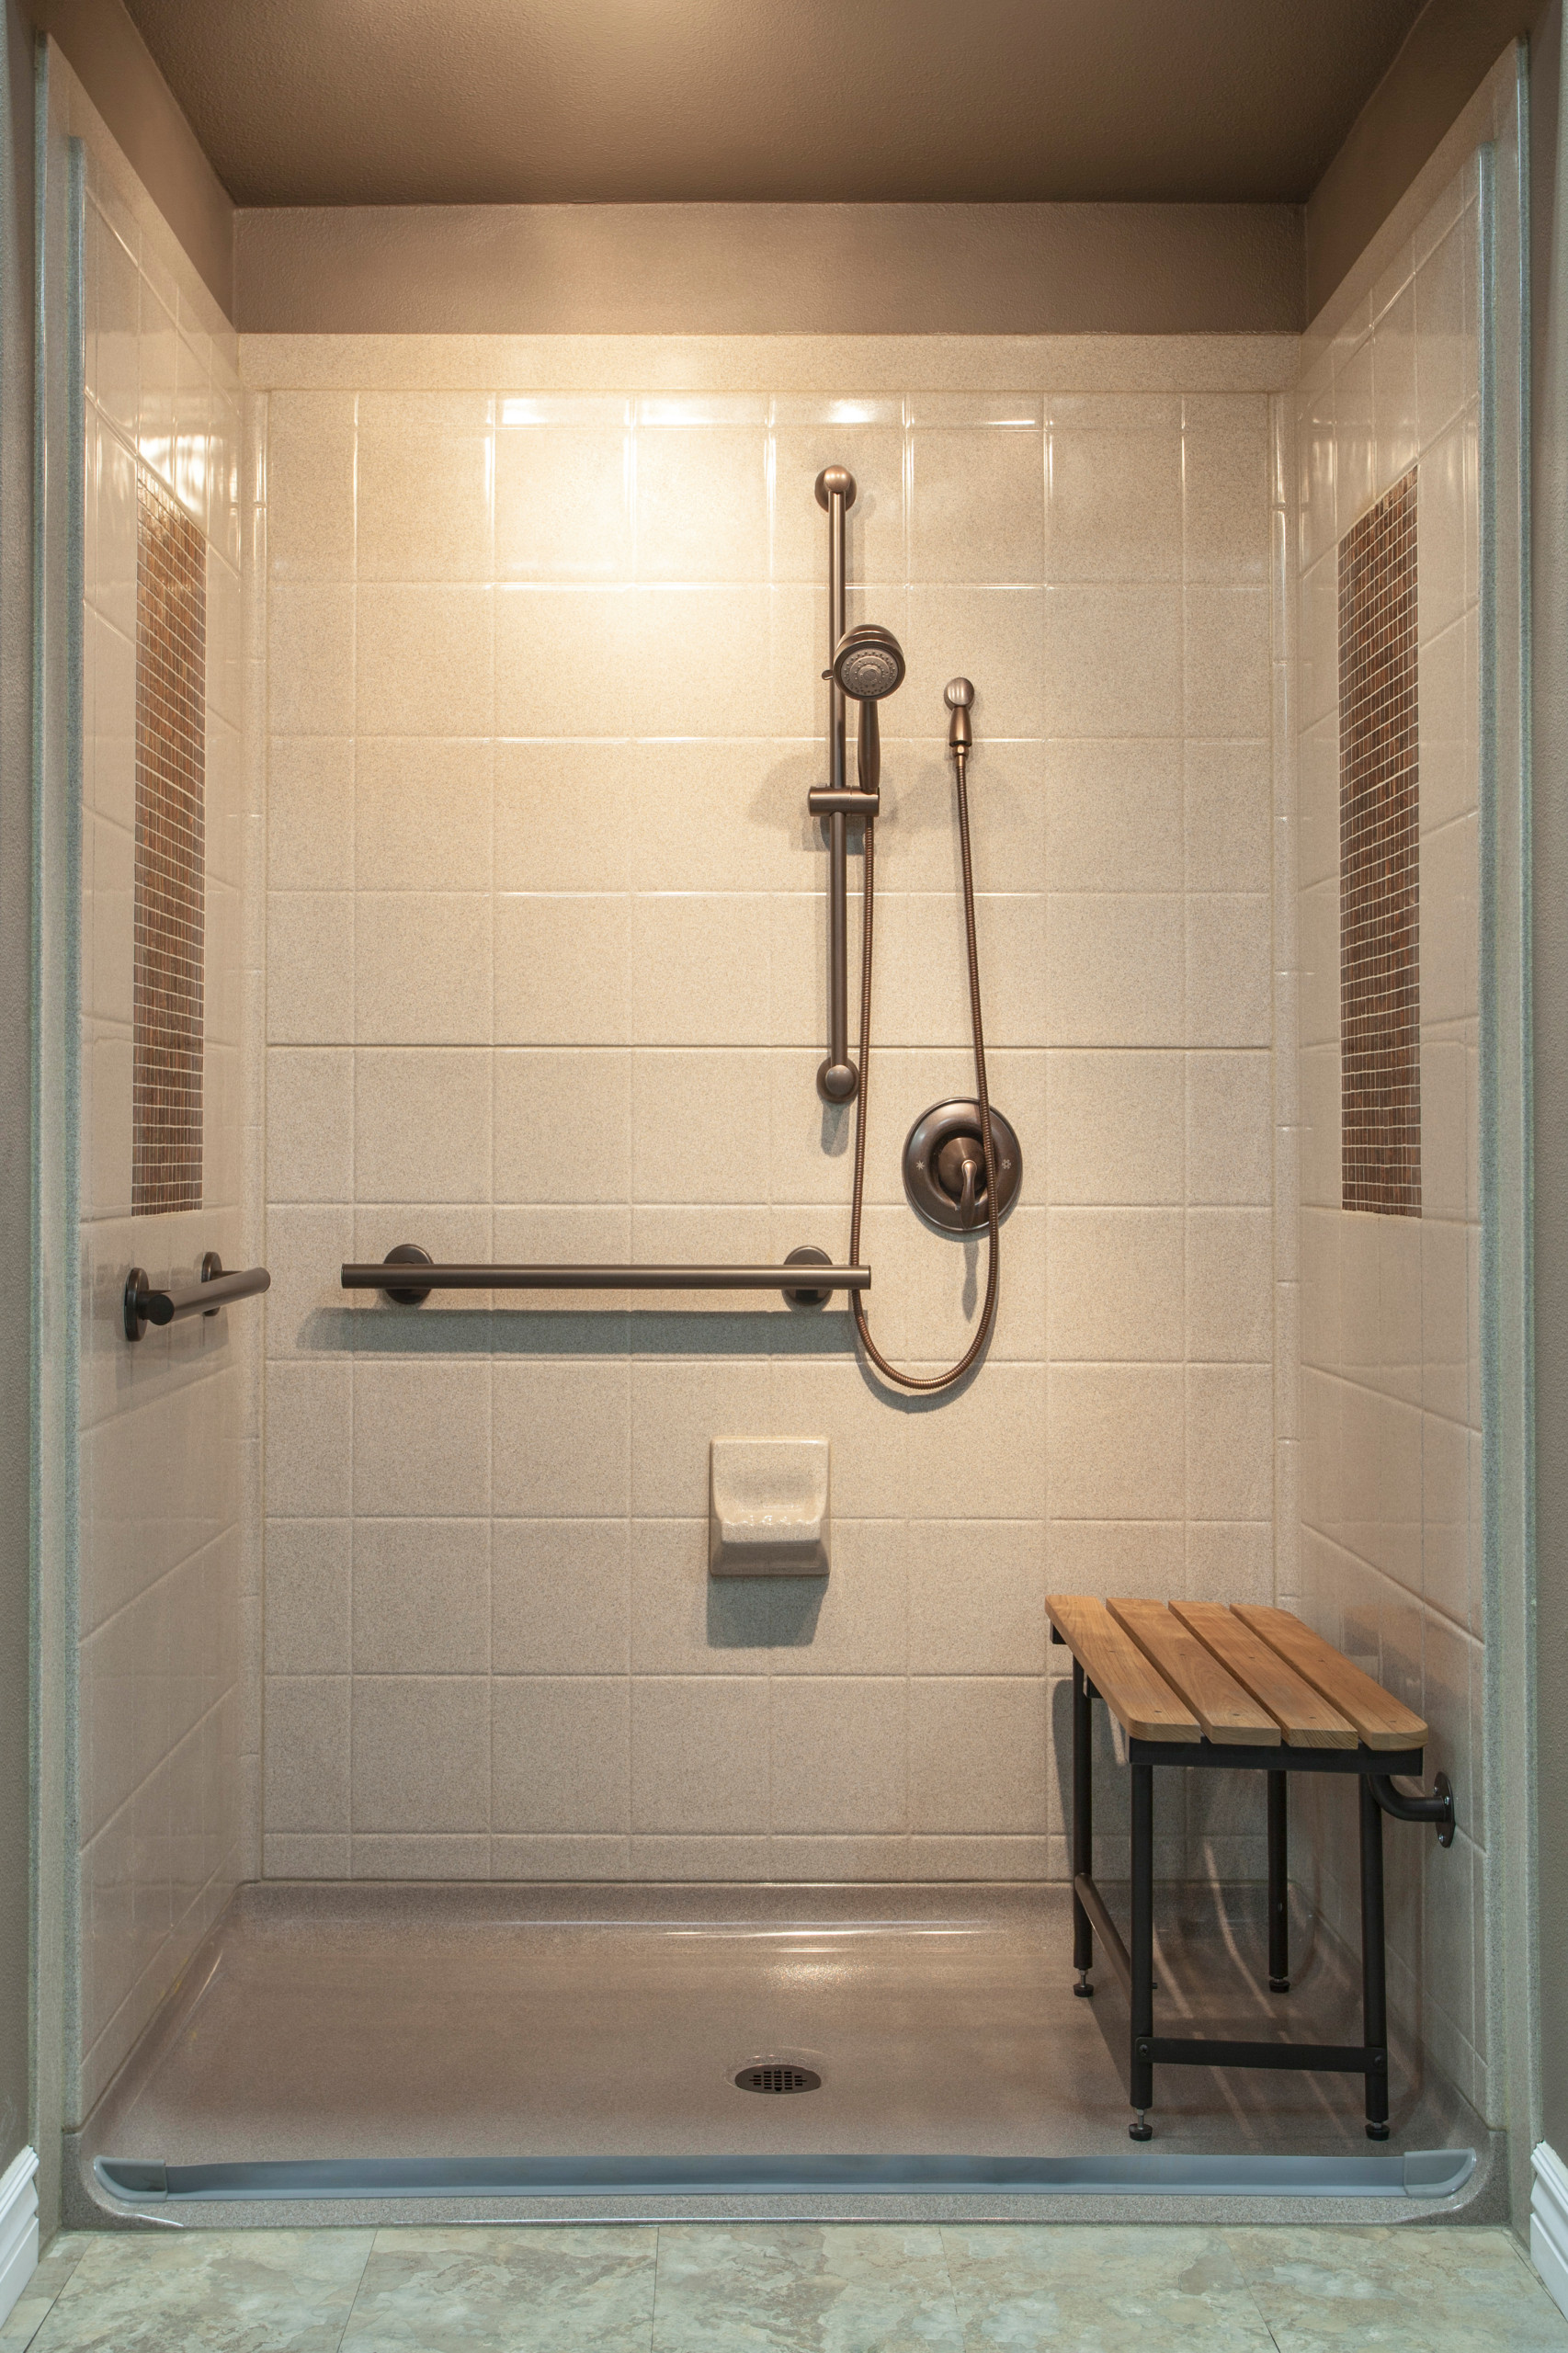 bestbath walk in shower roll-in shower handicap showers ada shower barrier  free - Bathroom - by Bestbath | Houzz